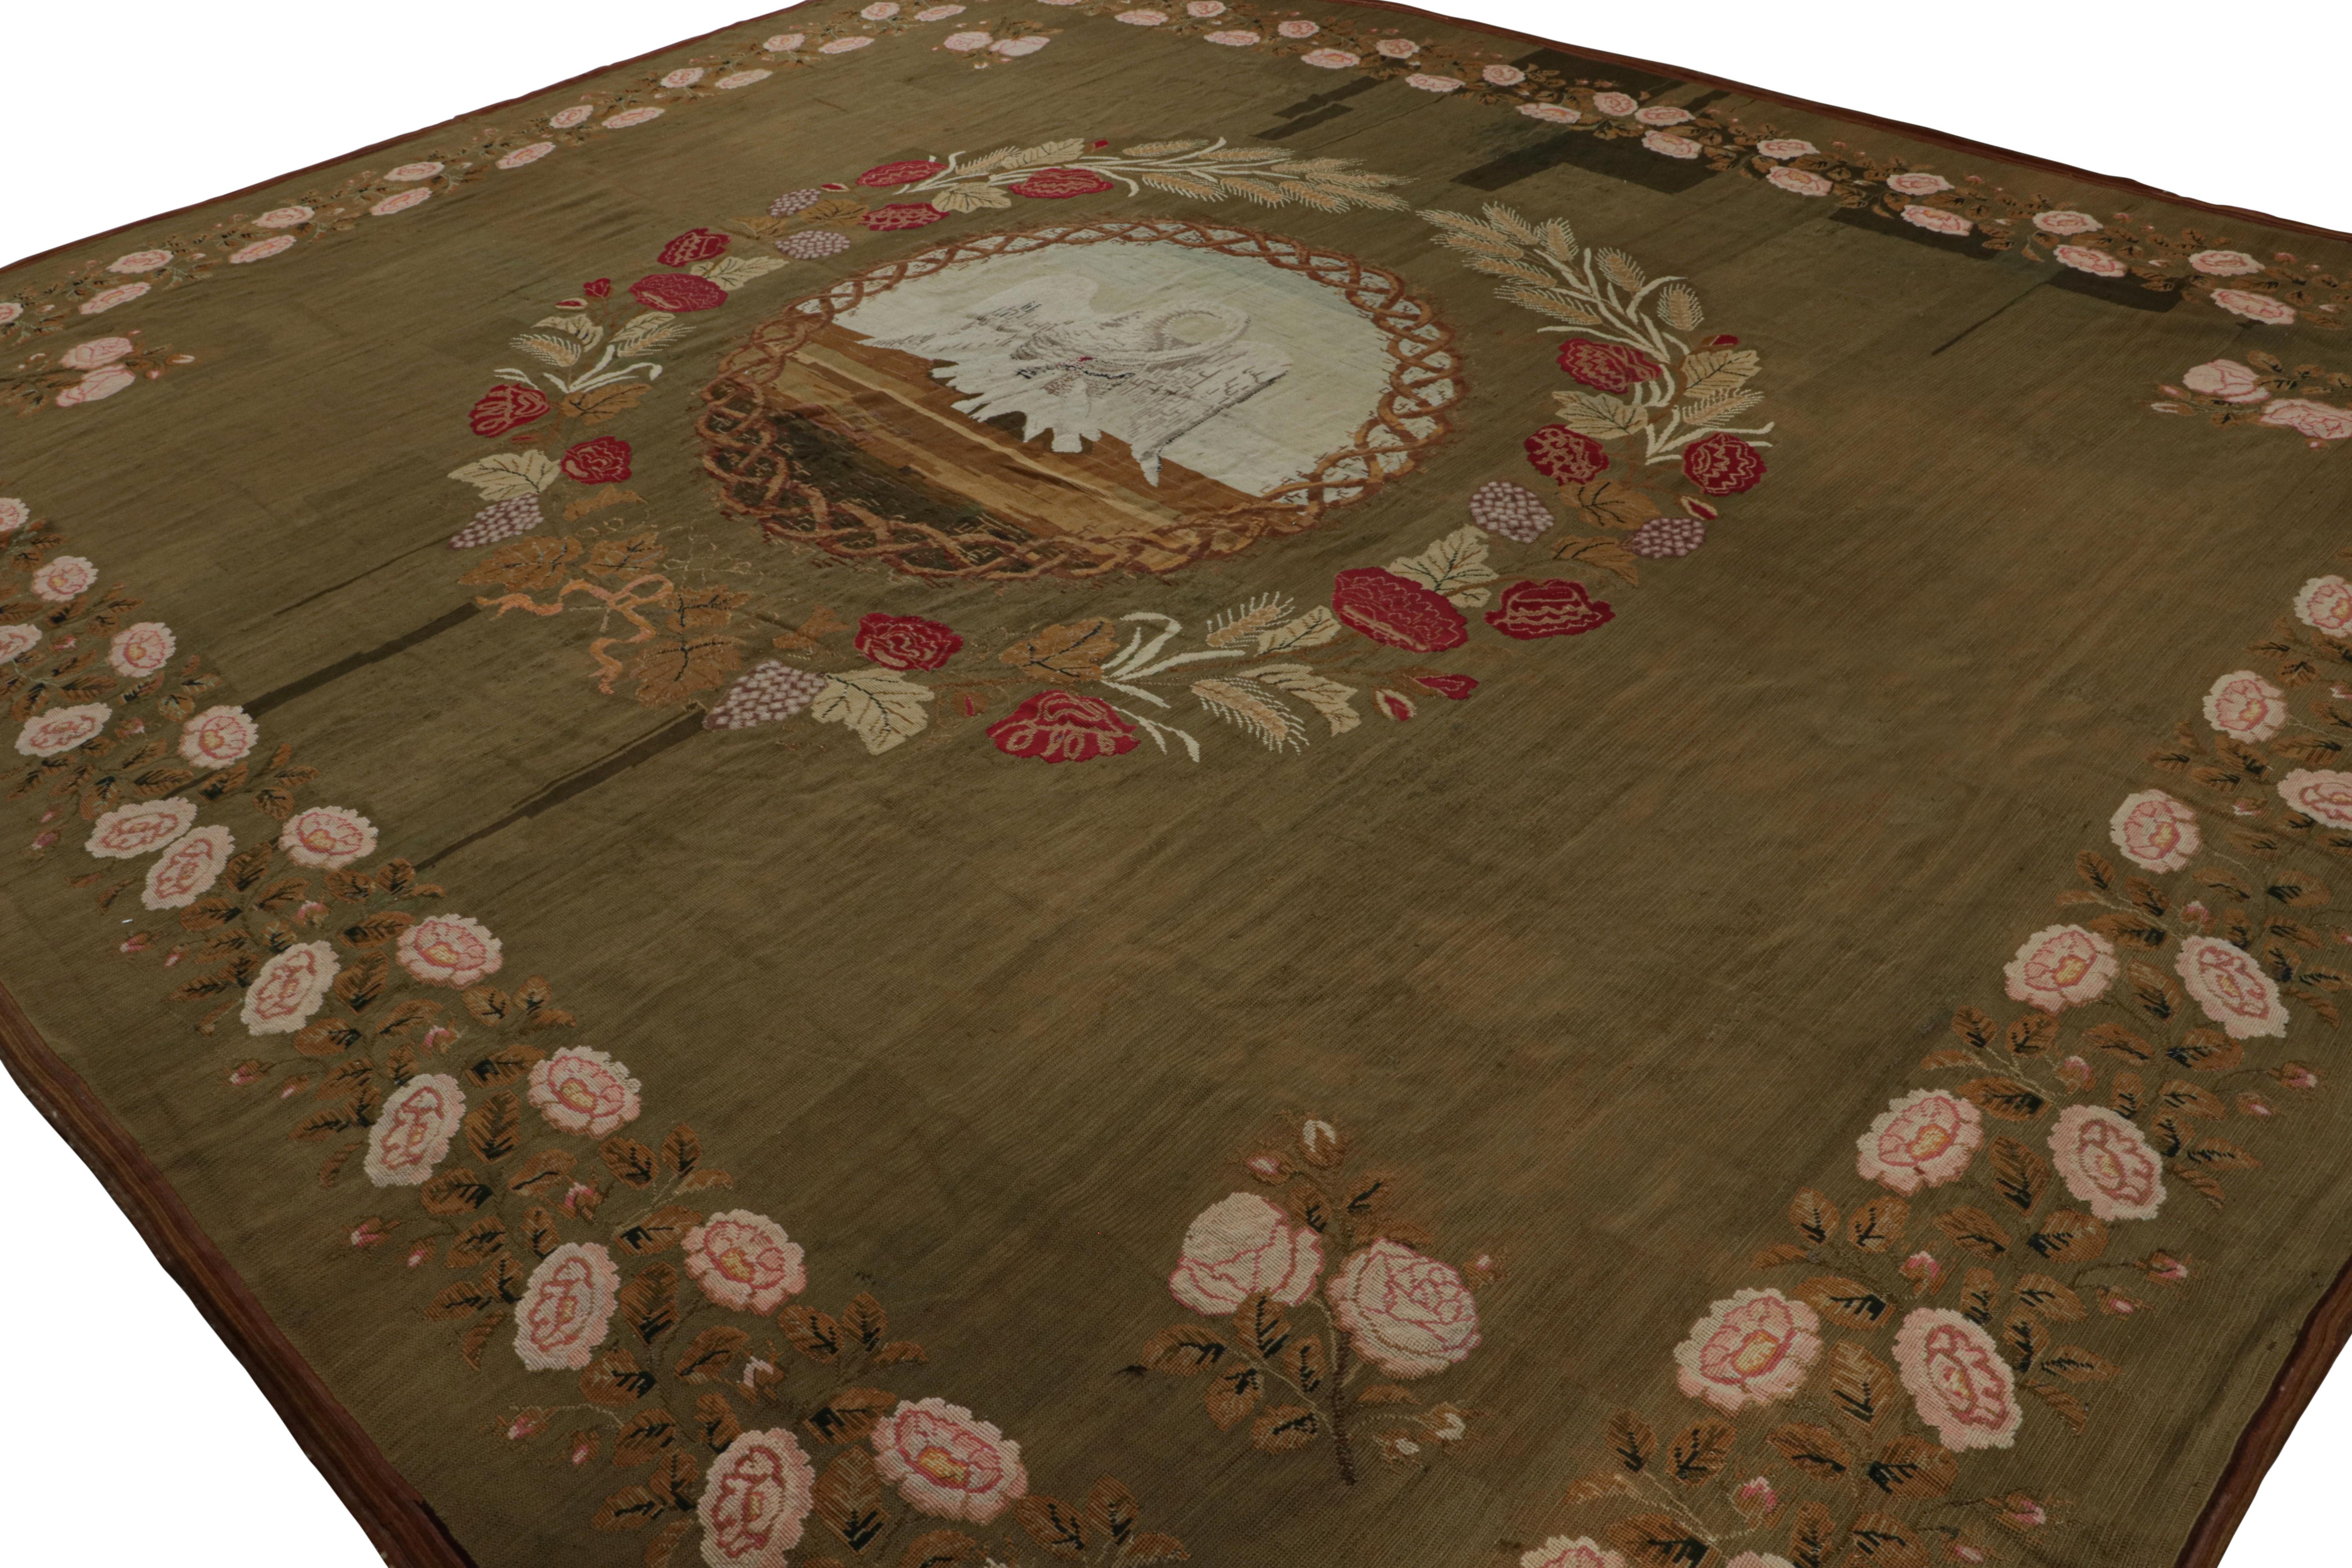 Dieser antike Flachgewebe-Teppich im Format 13×16 aus Wolle, handgewebt um 1890-1900, ist das jüngste Mitglied unseres Repertoires an europäischen Meisterwerken. 

Über das Design:

Bewunderer des Handwerks werden feststellen, dass es sich um ein